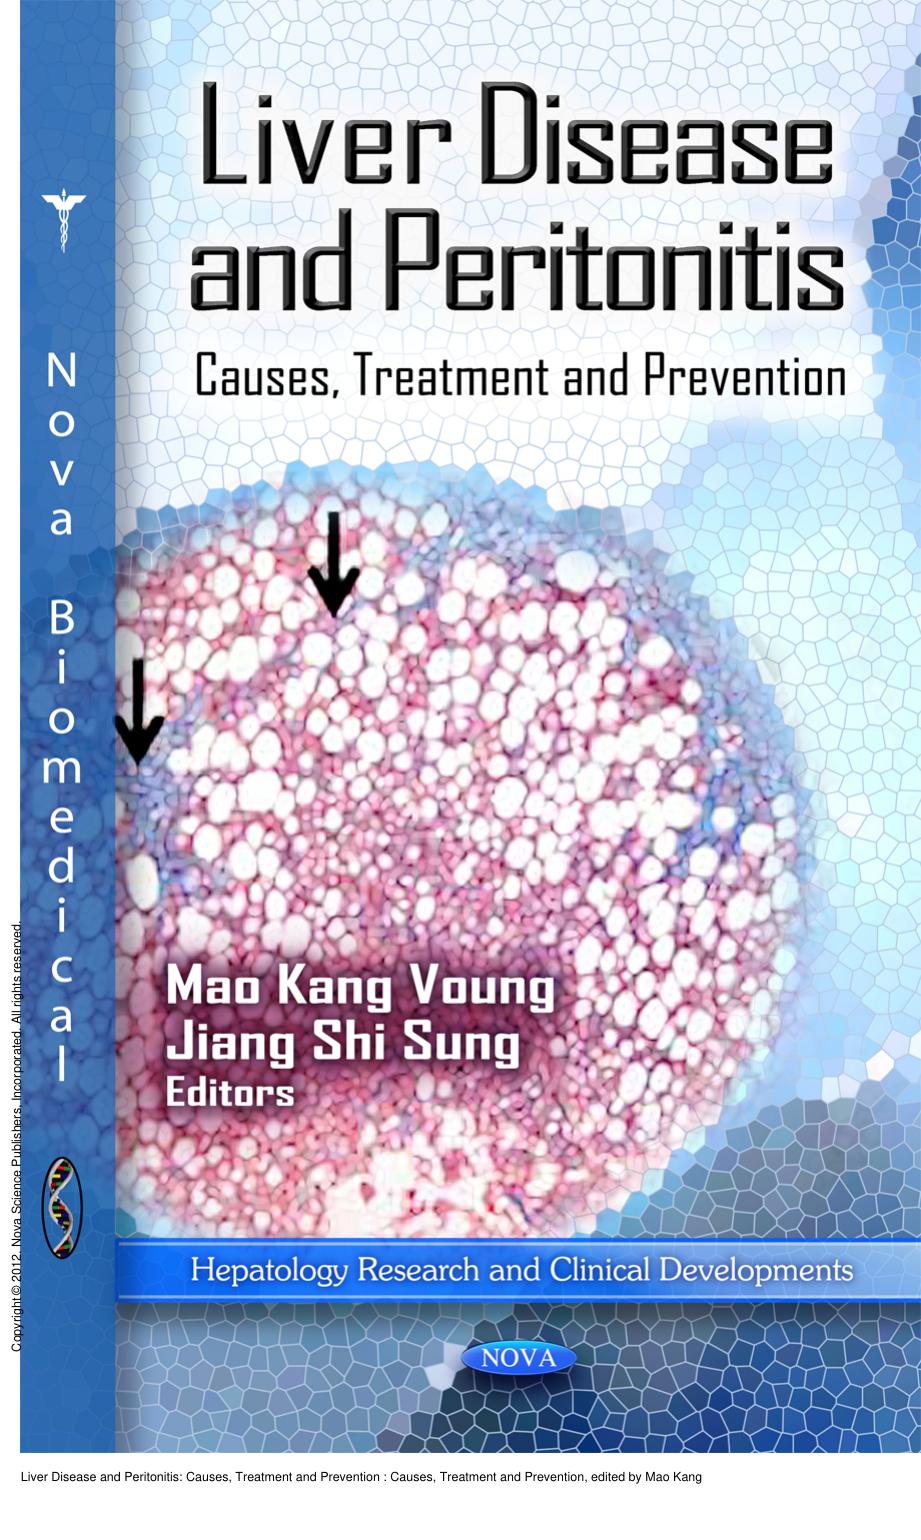 Liver Disease and Peritonitis: Causes, Treatment and Prevention : Causes, Treatment and Prevention by Mao Kang Voung; Jiang Shi Sung